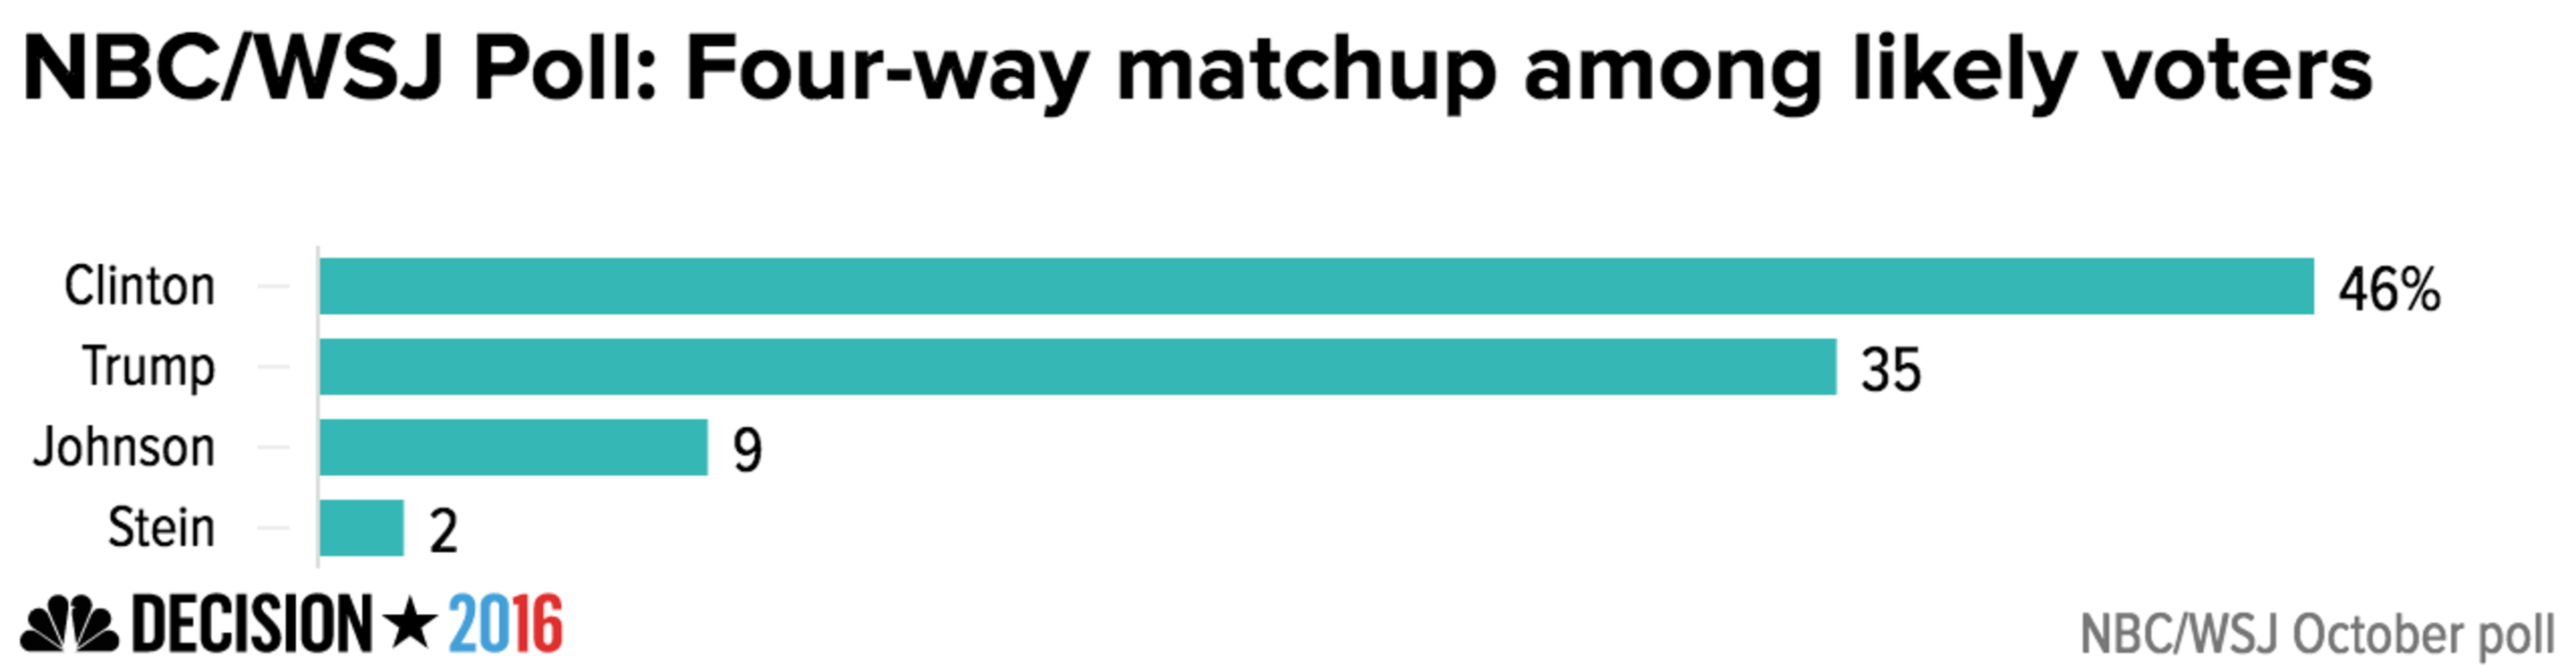 nbc_wsj_poll_four-way_matchup_among_like